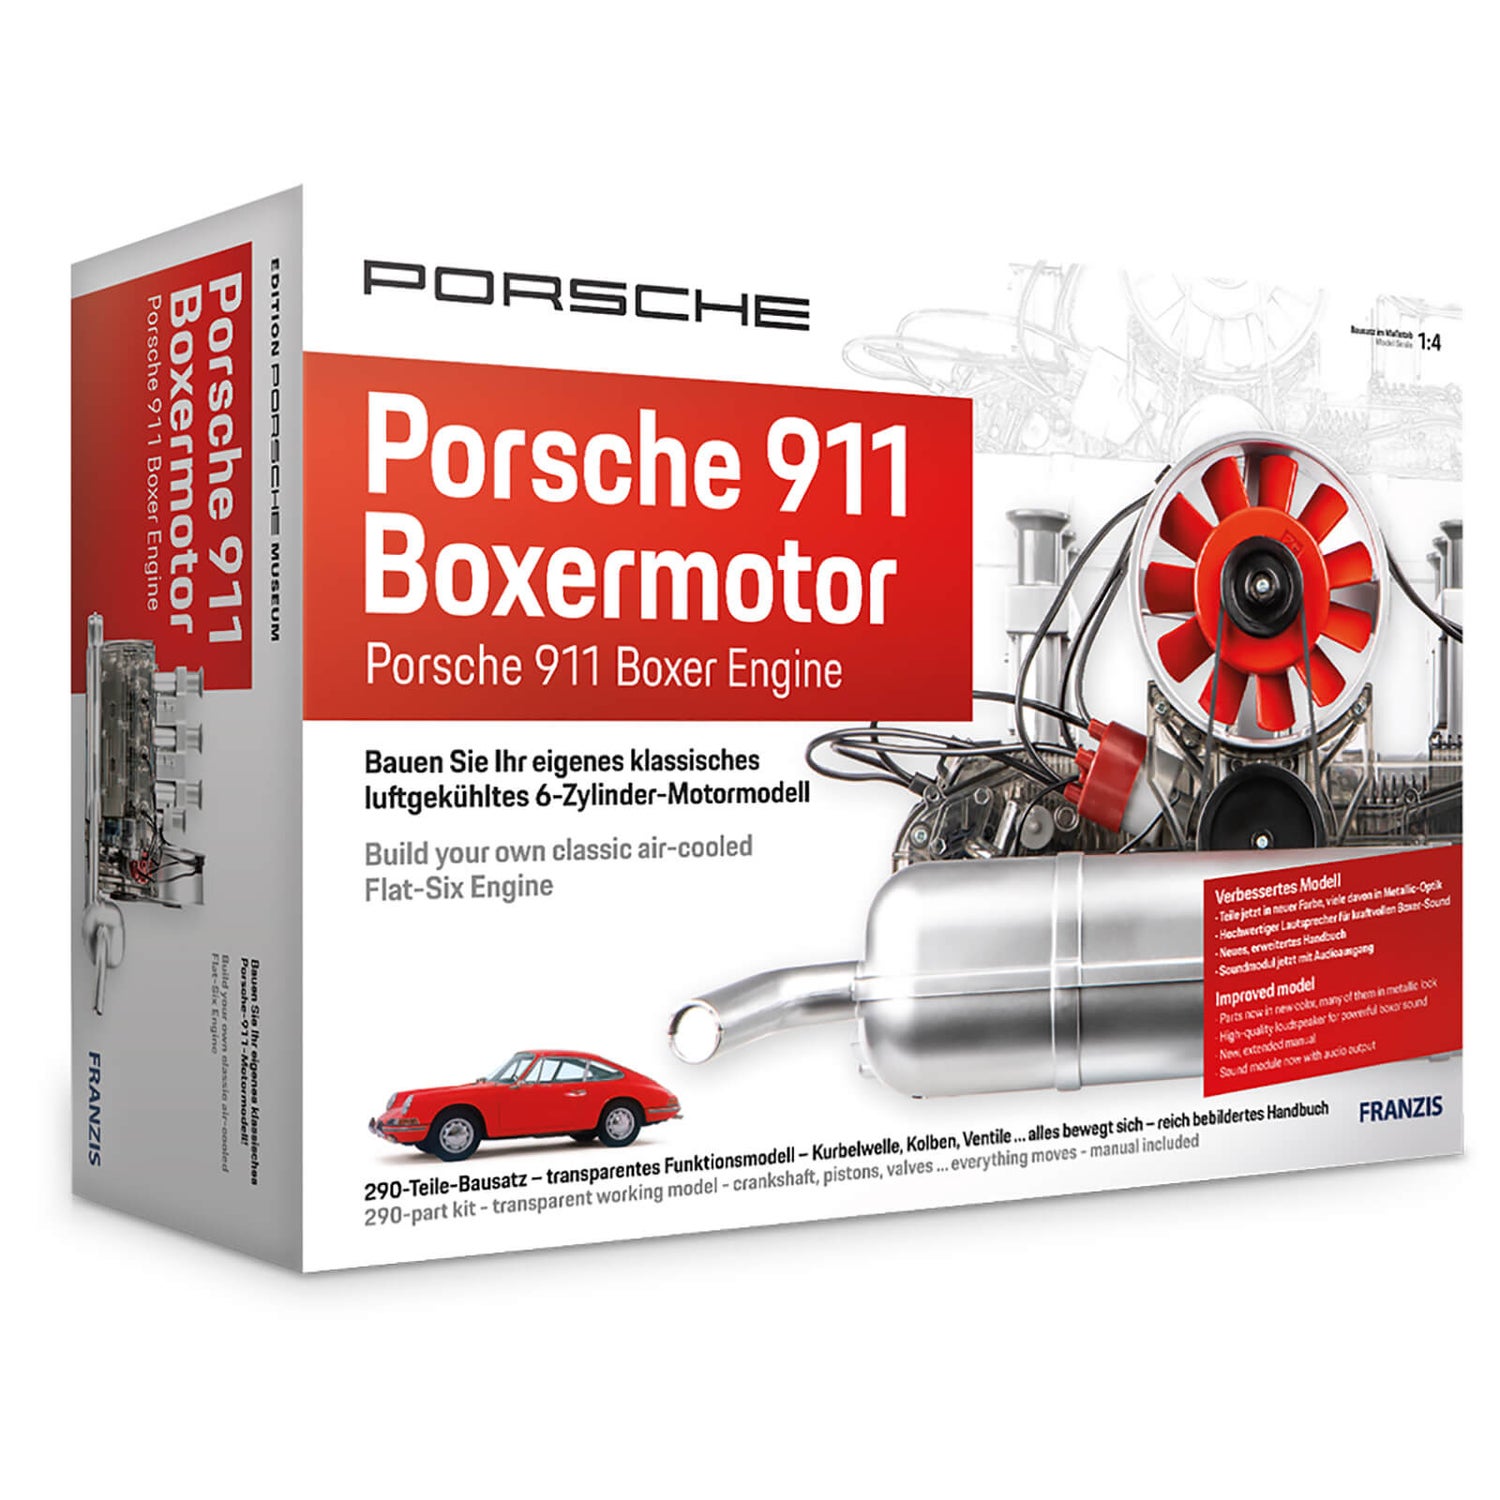 Franzis Official Porsche 911 Boxermotor